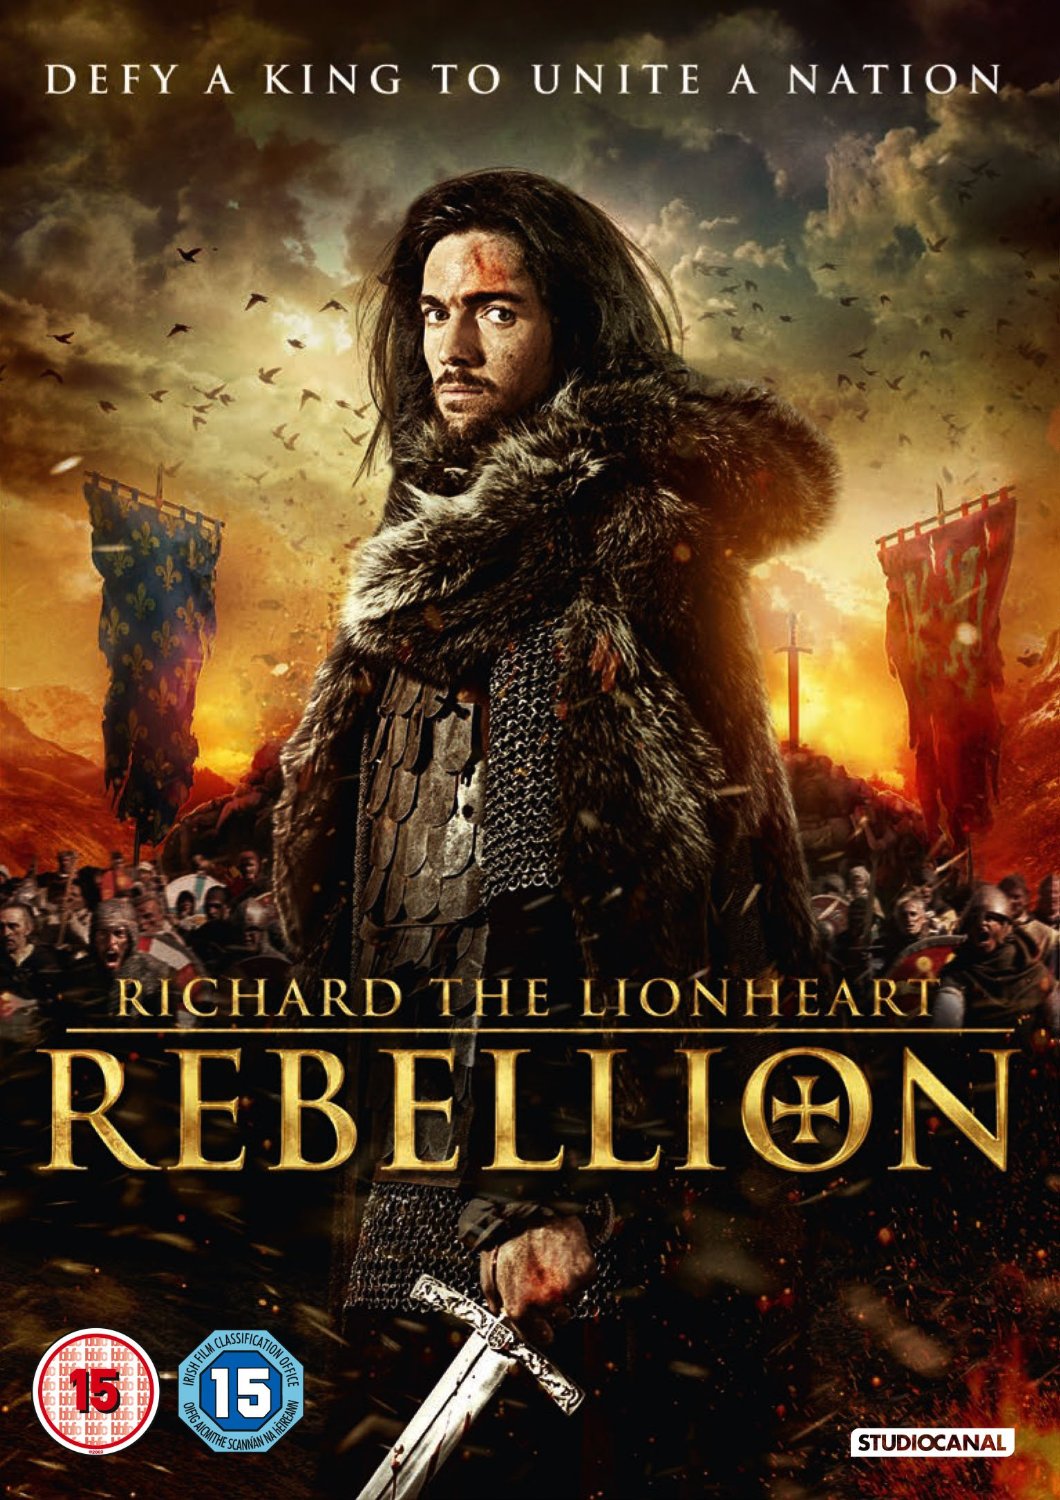 Richard the Lionheart: Rebellion 2015 - Full (HD)